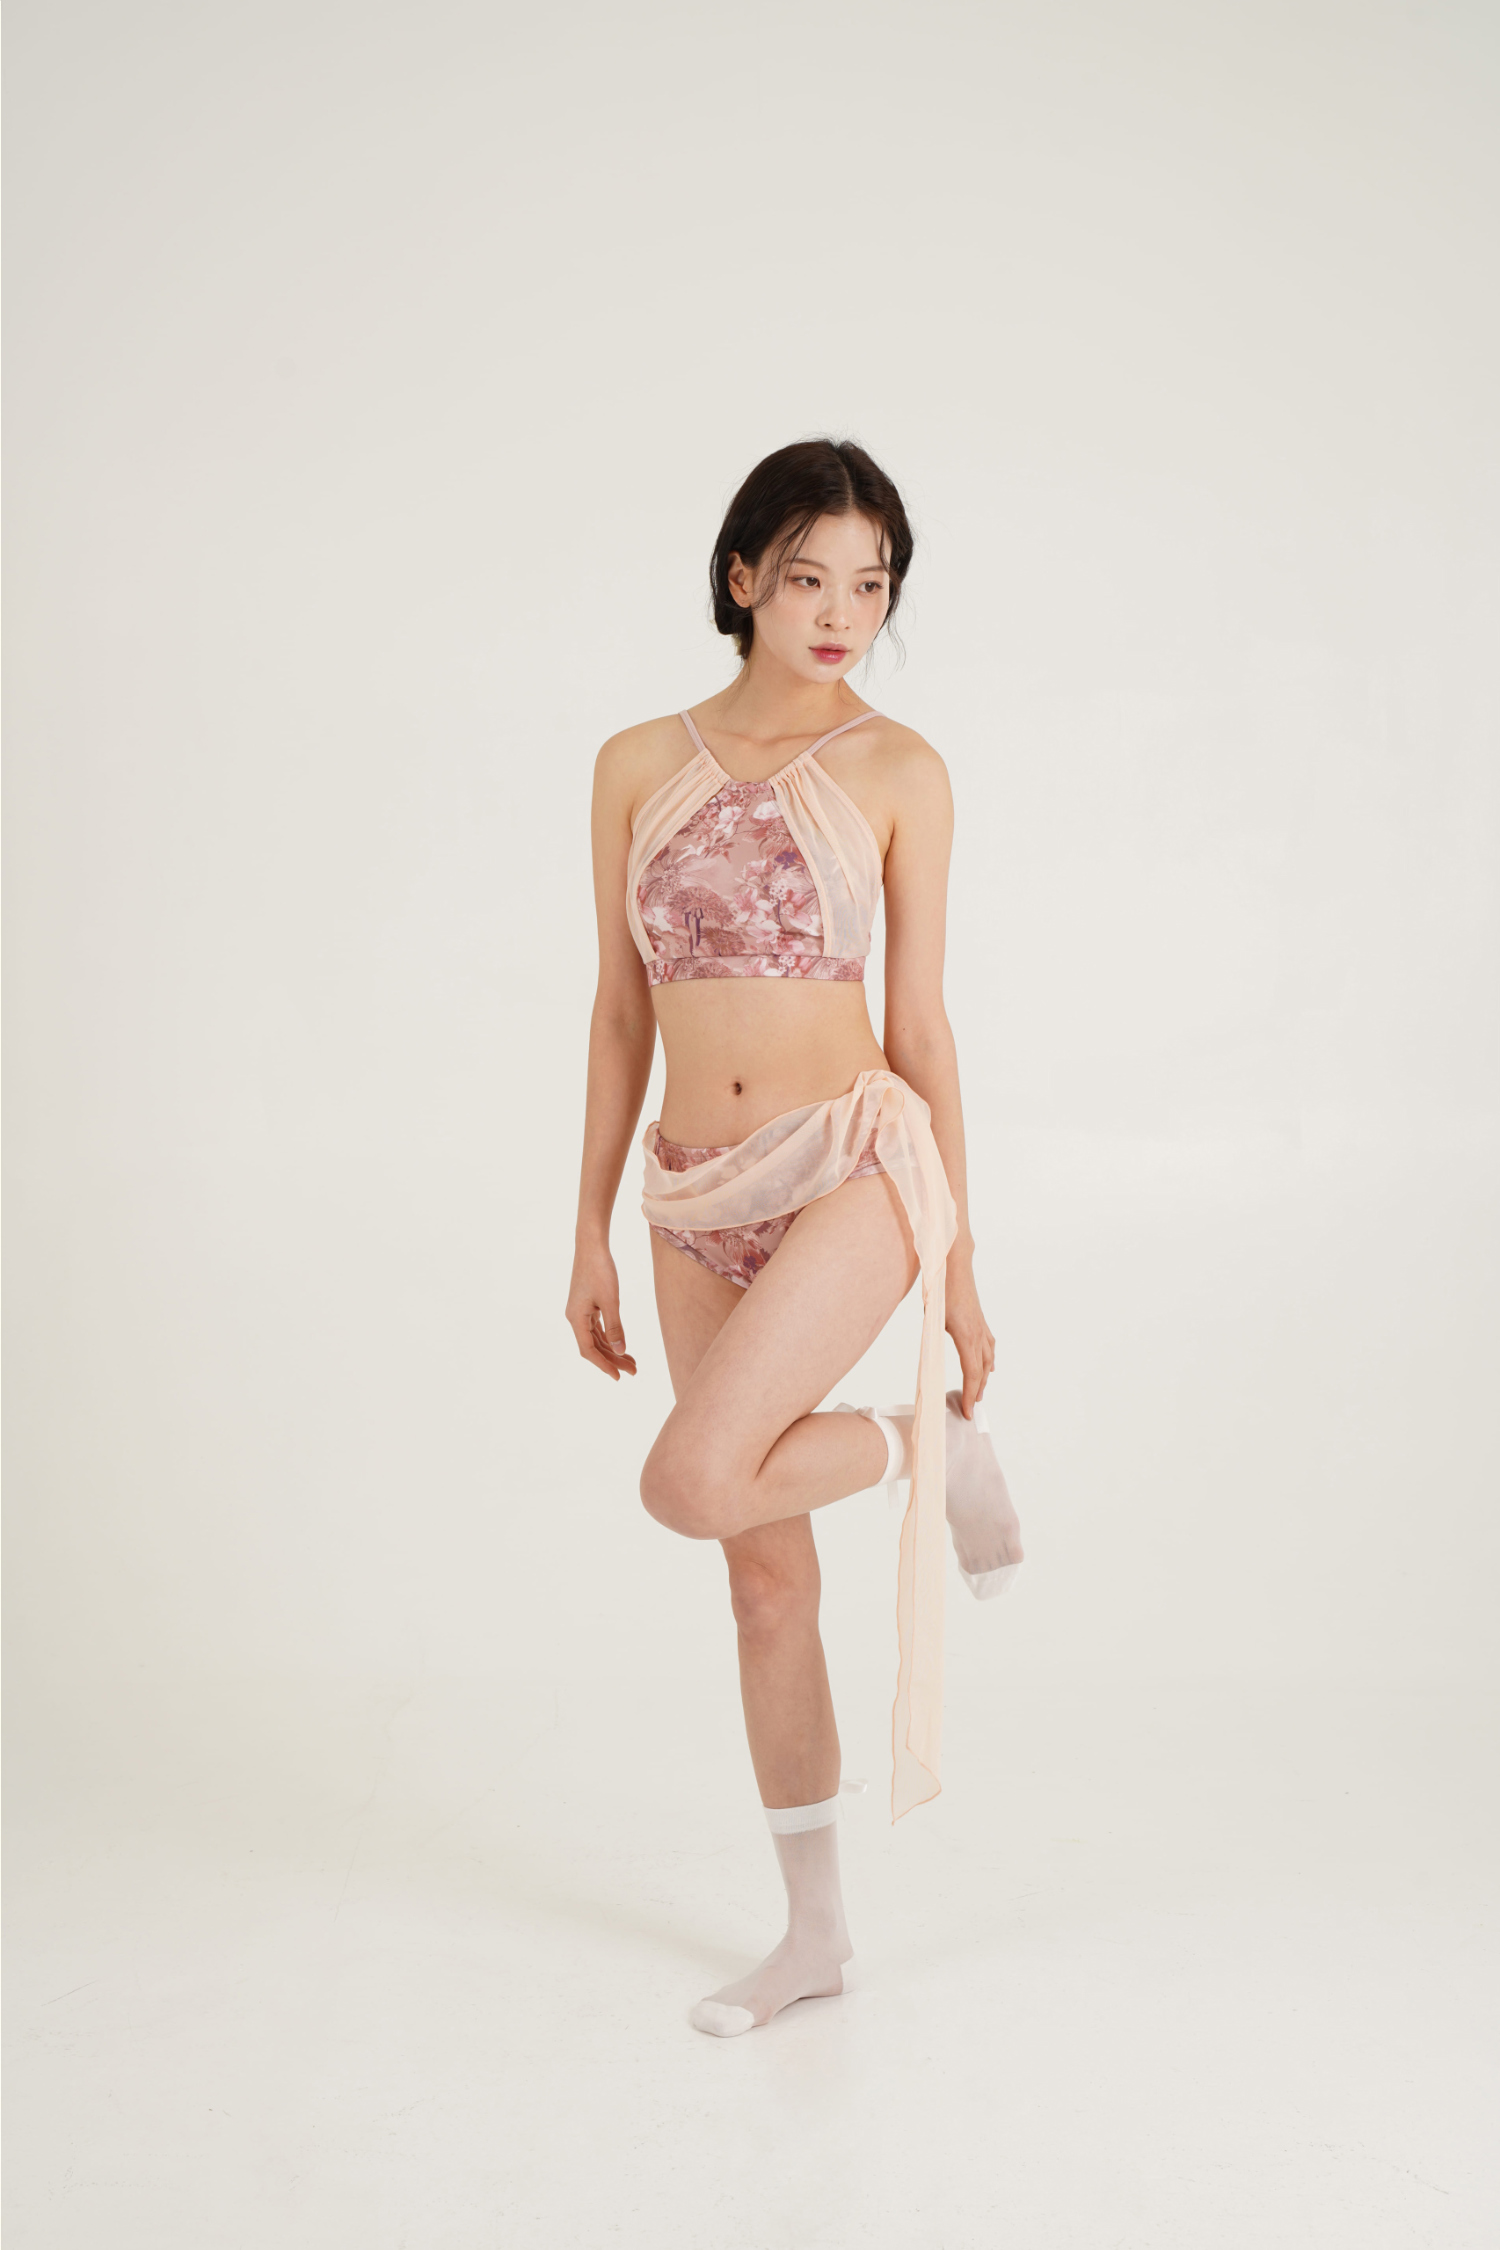 Swimsuit/Underwear Model Wearing Image-S22L1